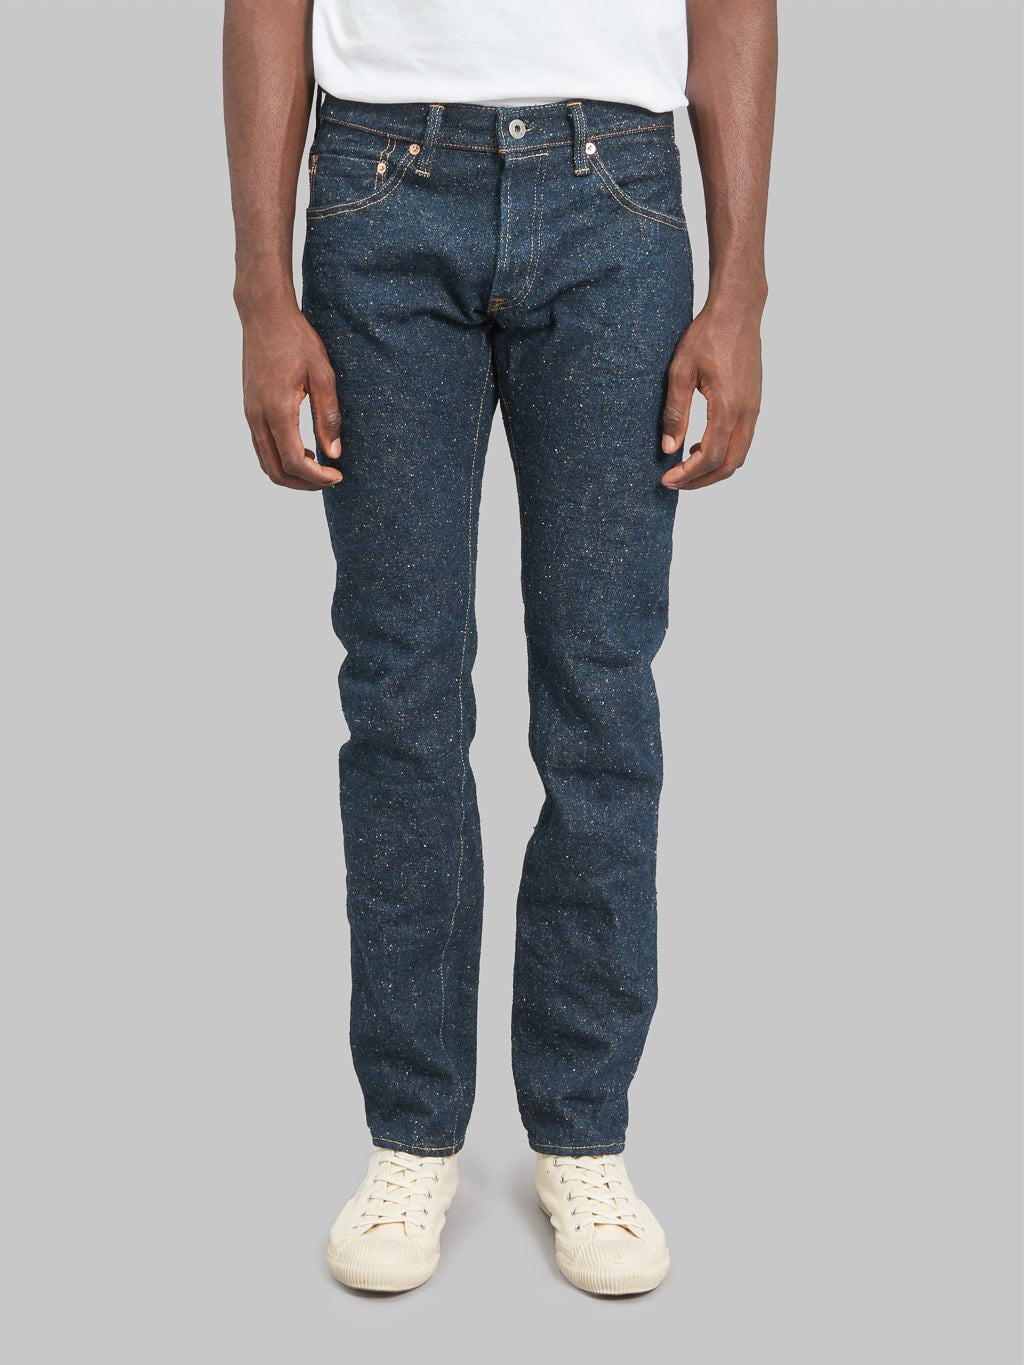 ONI 622 Secret Super Rough 20oz Jeans front fit